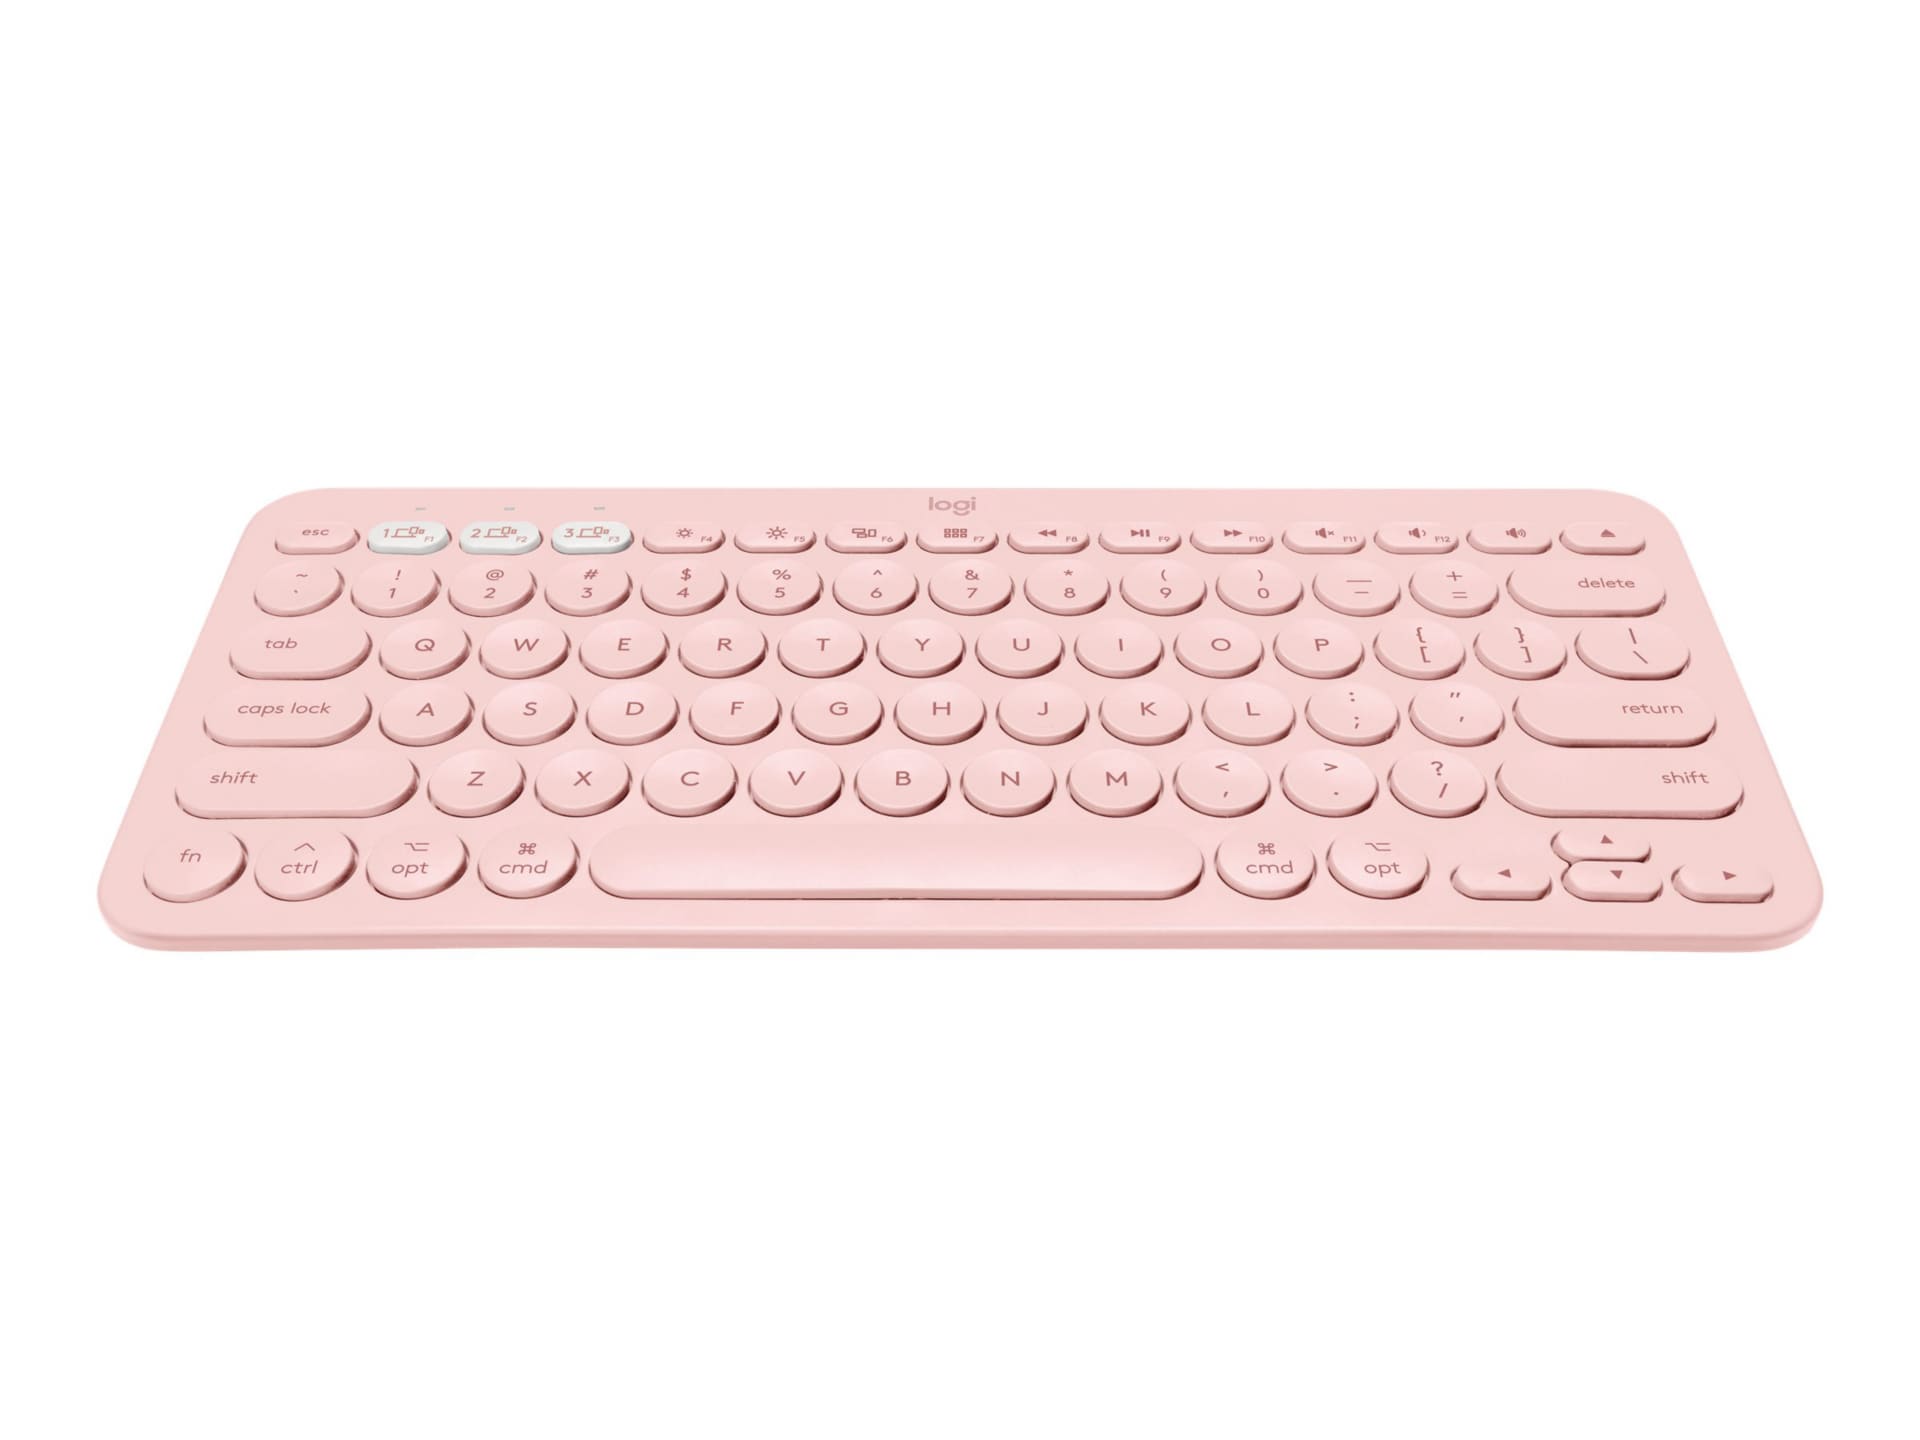 Logitech K380 Multi-Device Bluetooth Keyboard for Mac - keyboard - rose - 920-009728 - Keyboards -